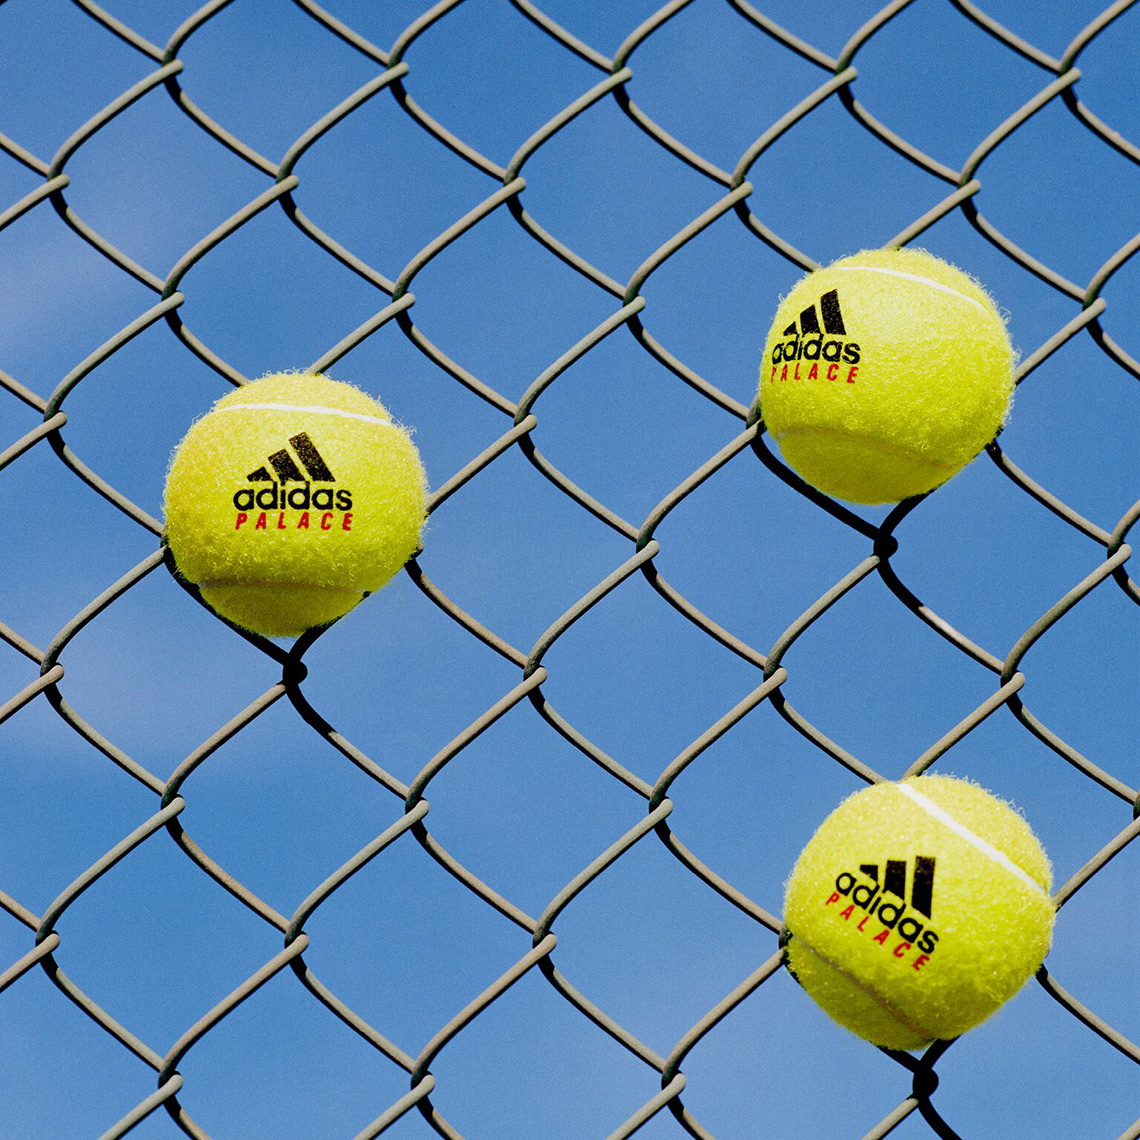 Palace Adidas Tennis Wimbledon Collection 7